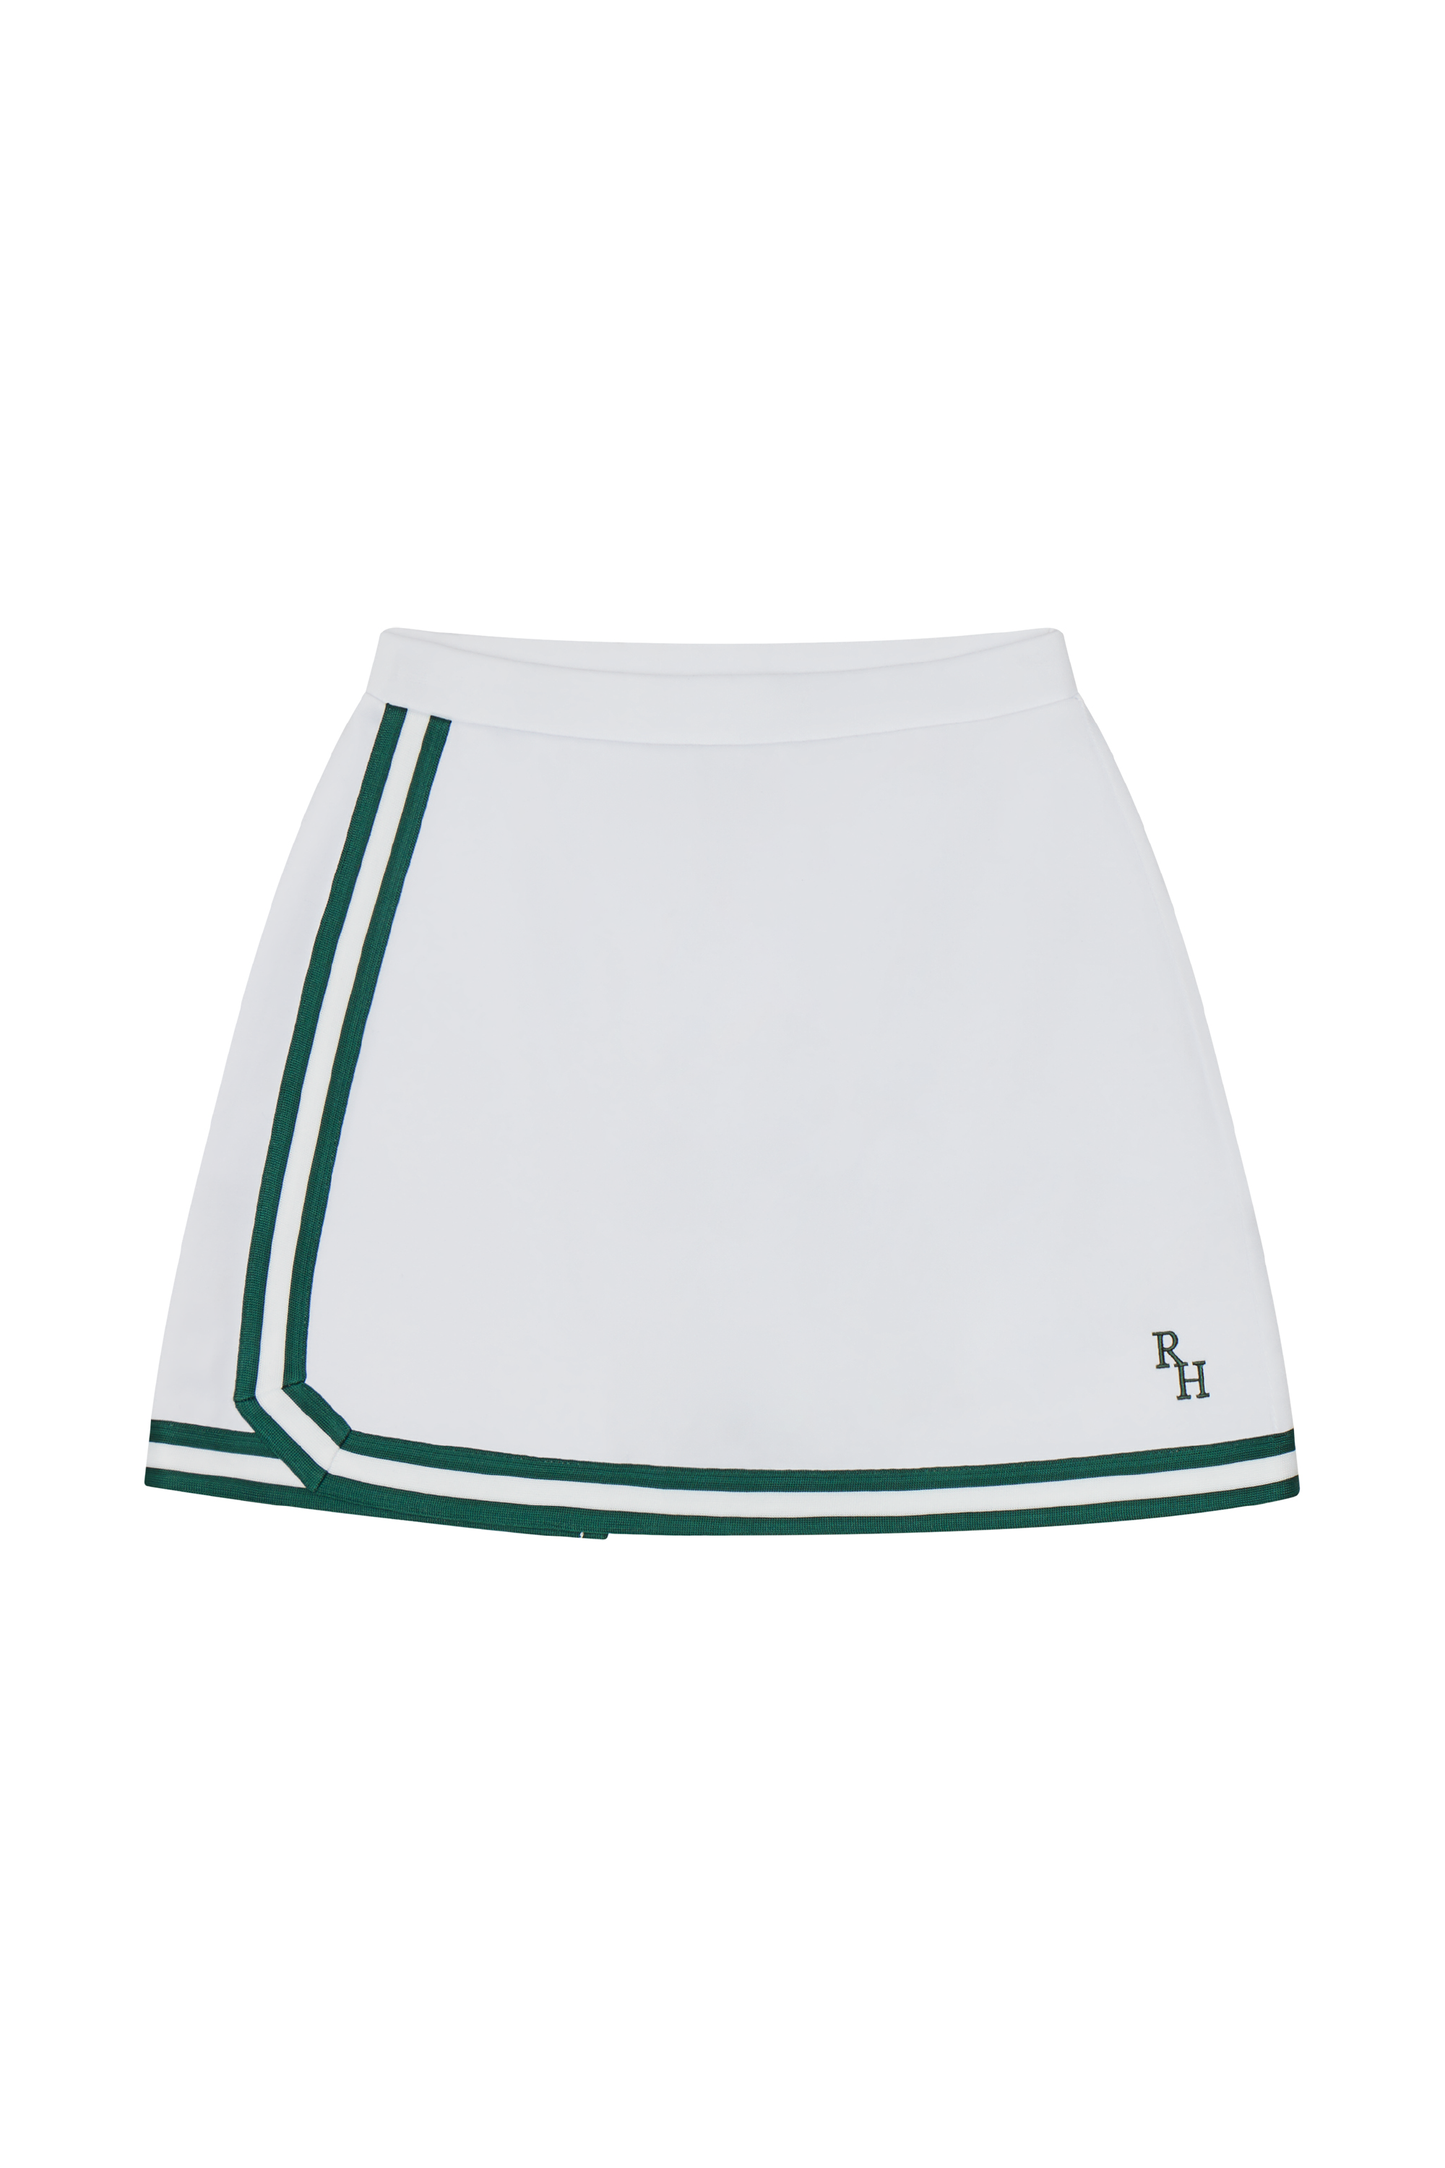 Spelman A-line Tennis Skirt with Green Trim